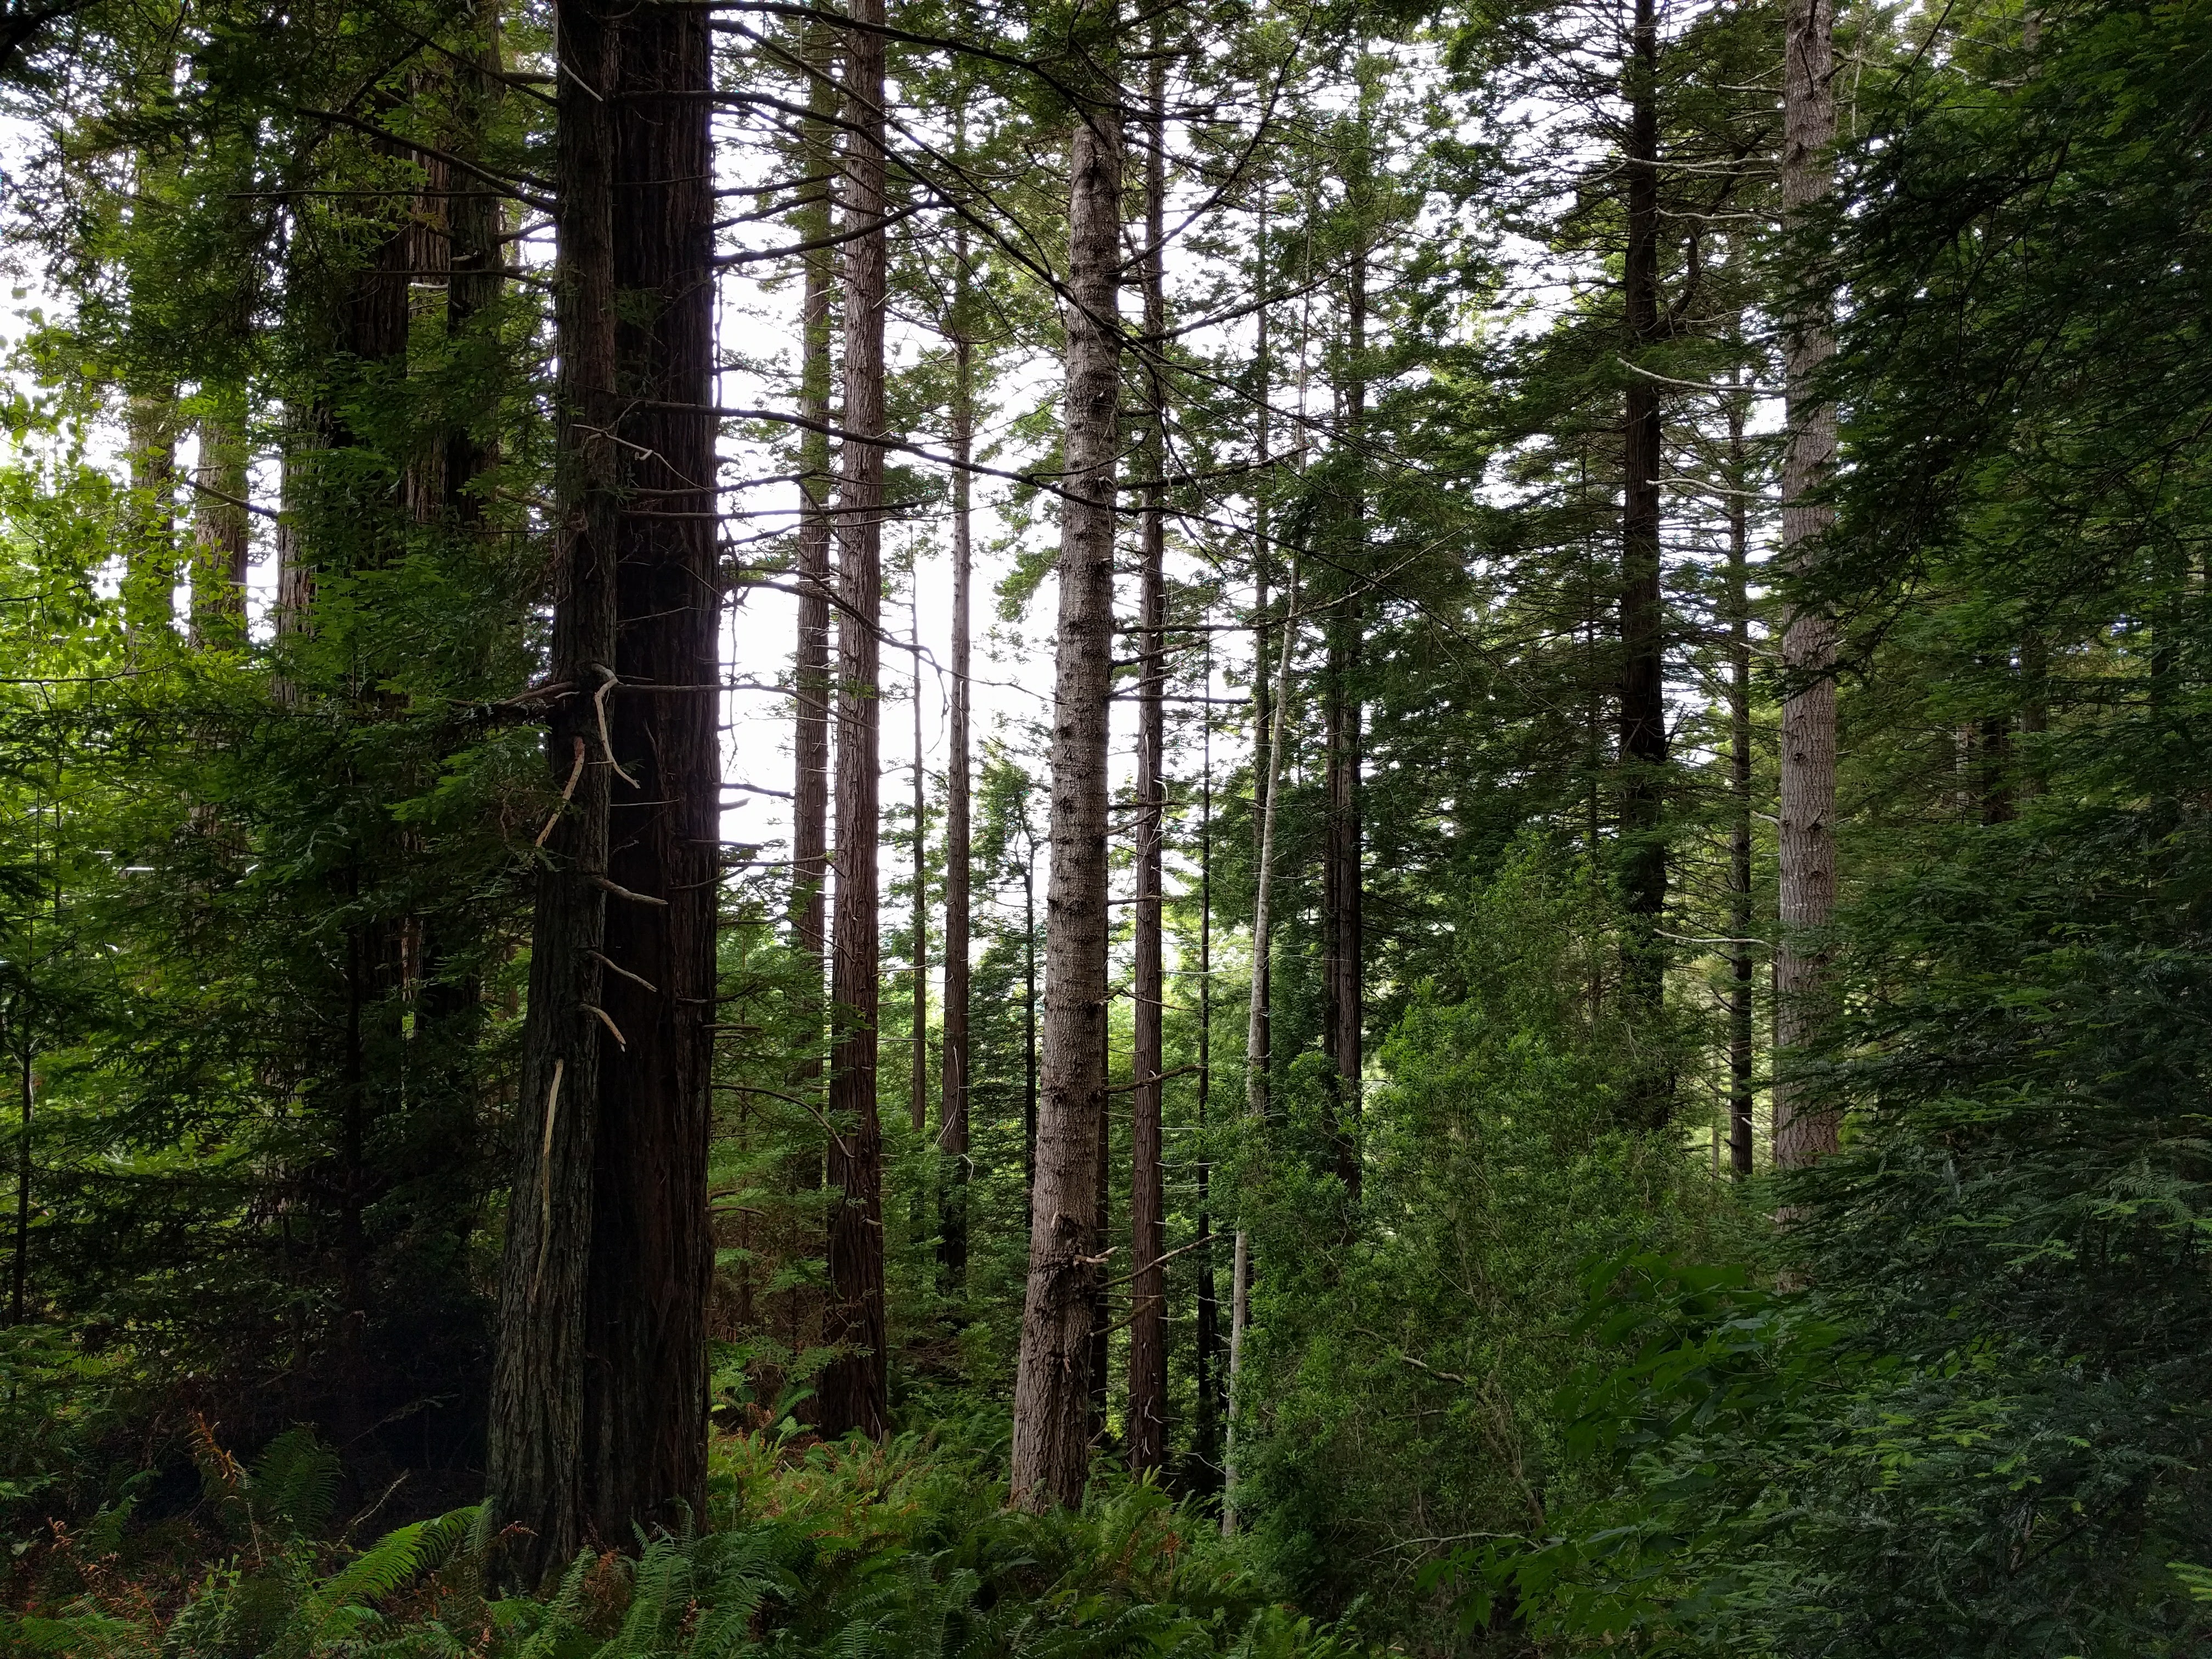 Coastal foggy forest of redwood, Douglas-fir, and grand fir